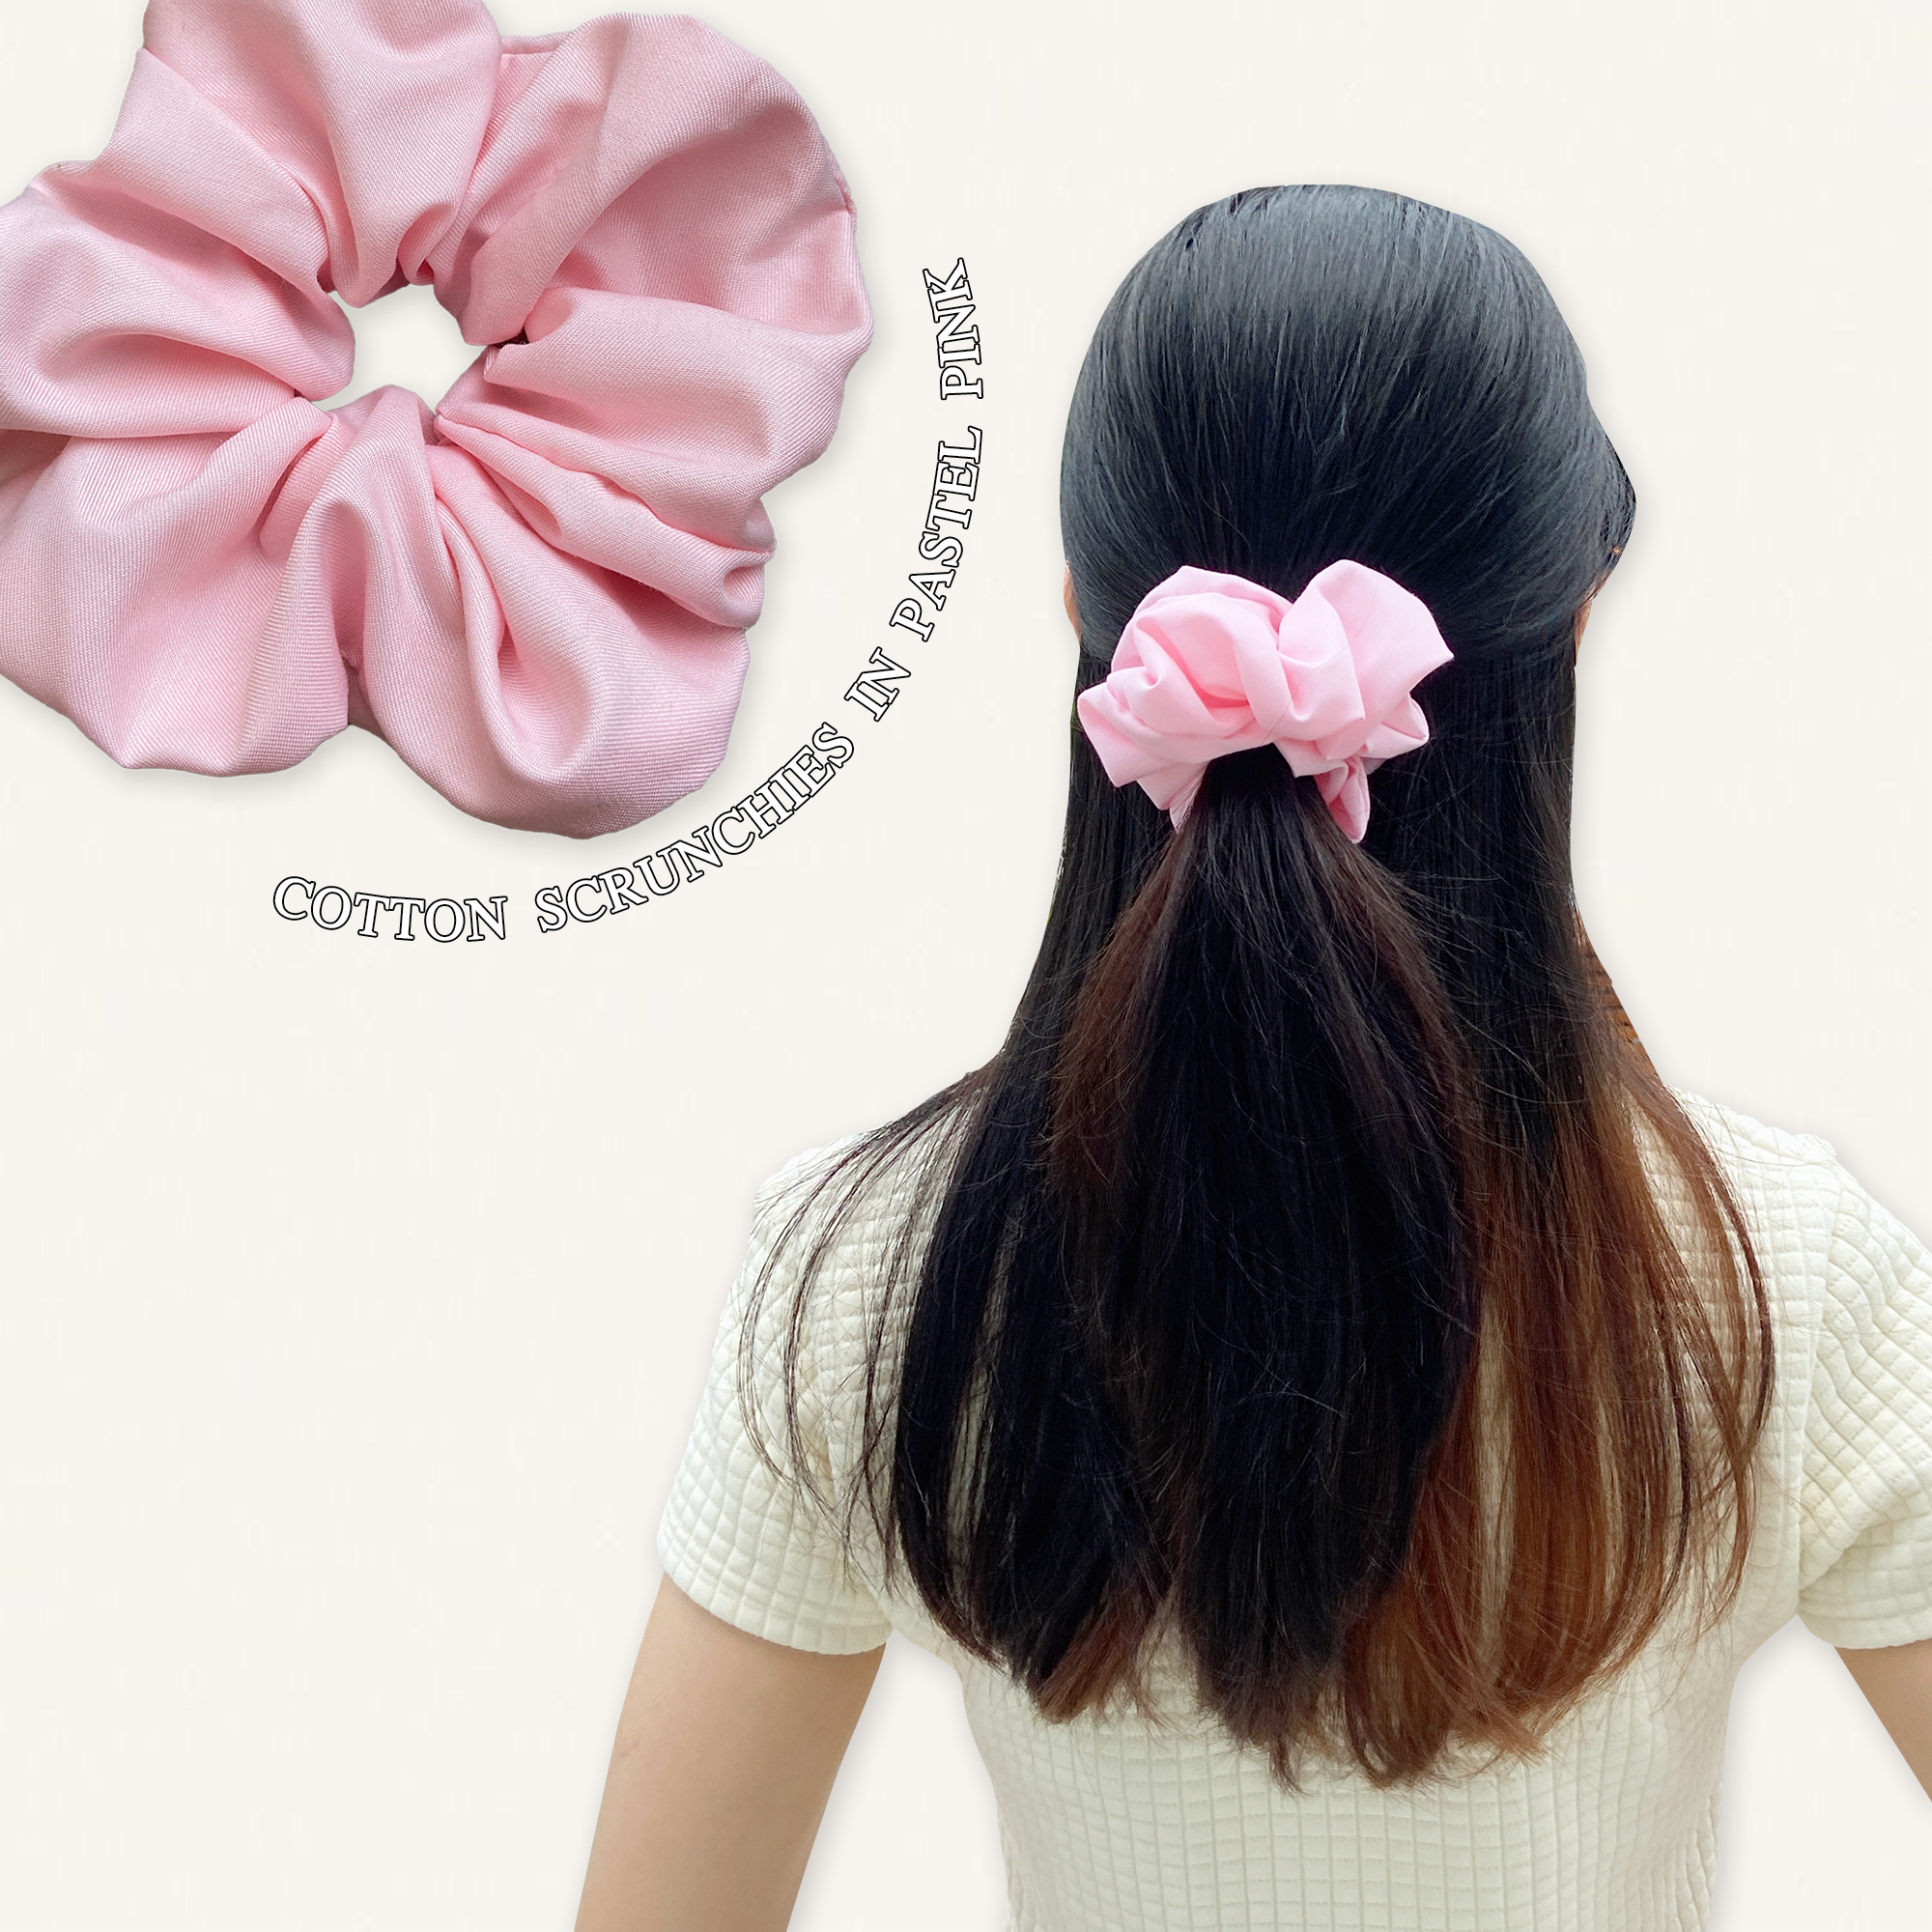 Cotton scrunchie in pink 💓💝